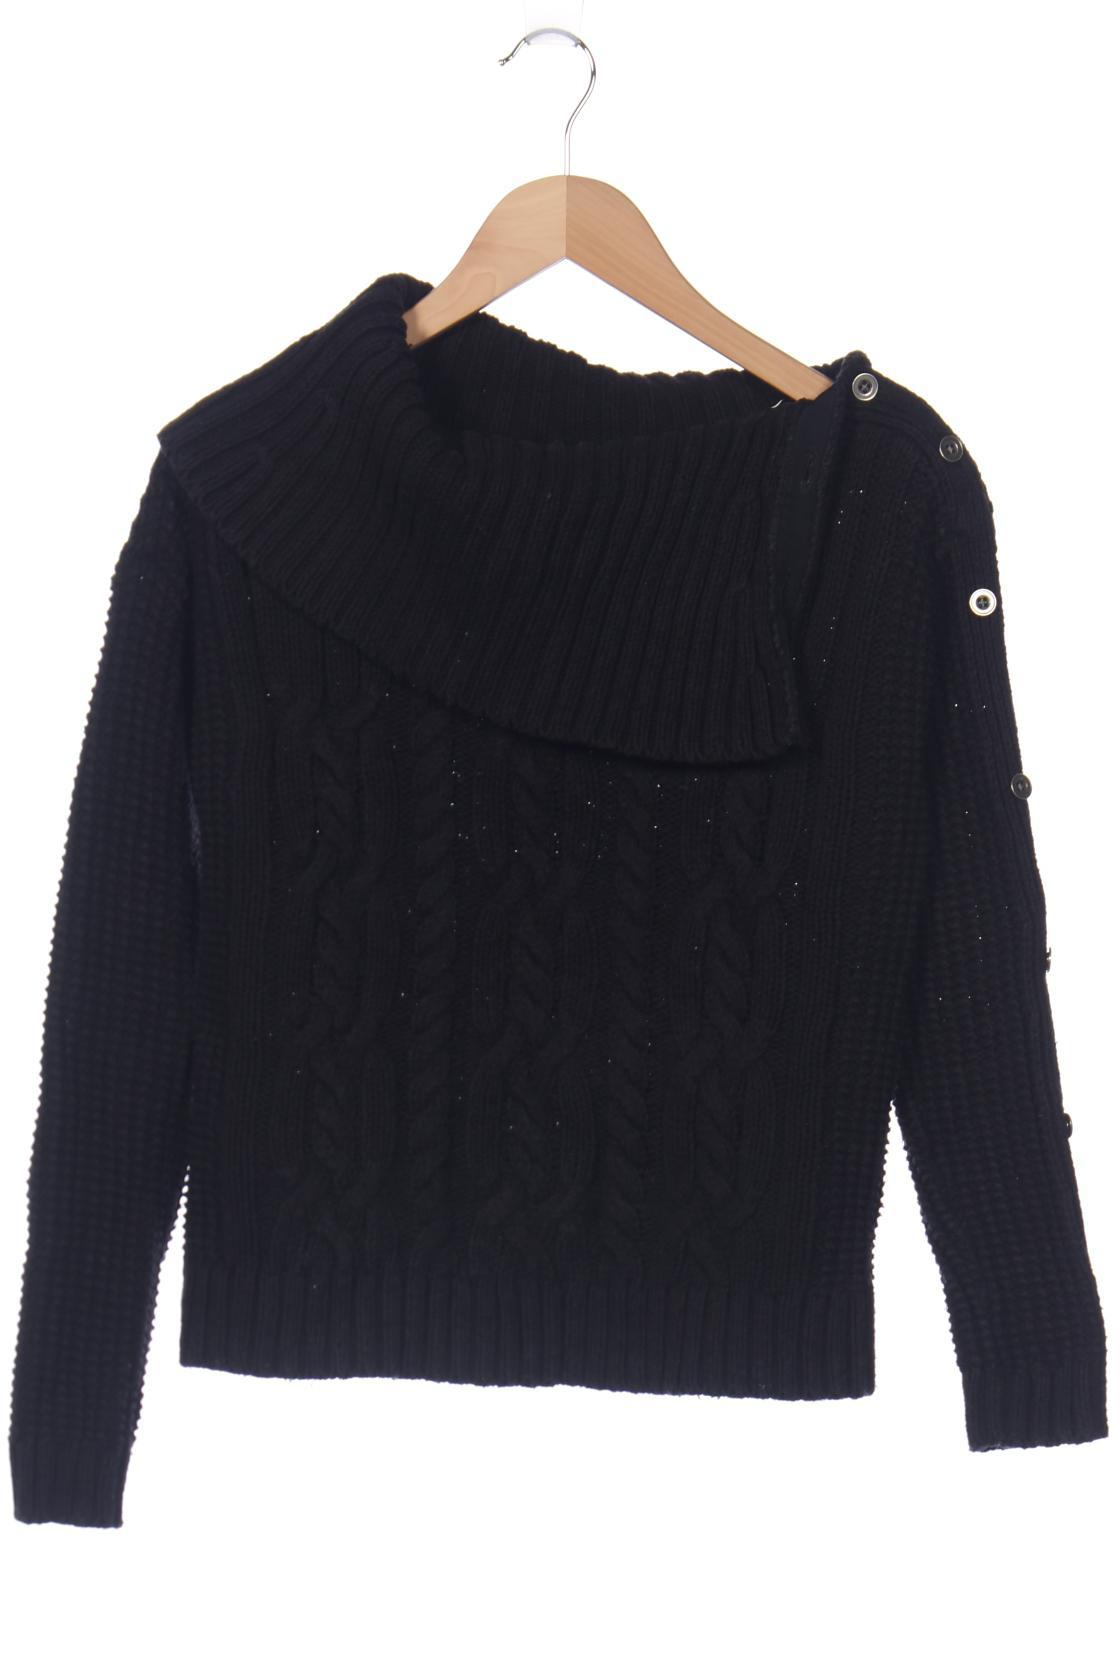 Abercrombie & Fitch Damen Pullover, schwarz von Abercrombie & Fitch